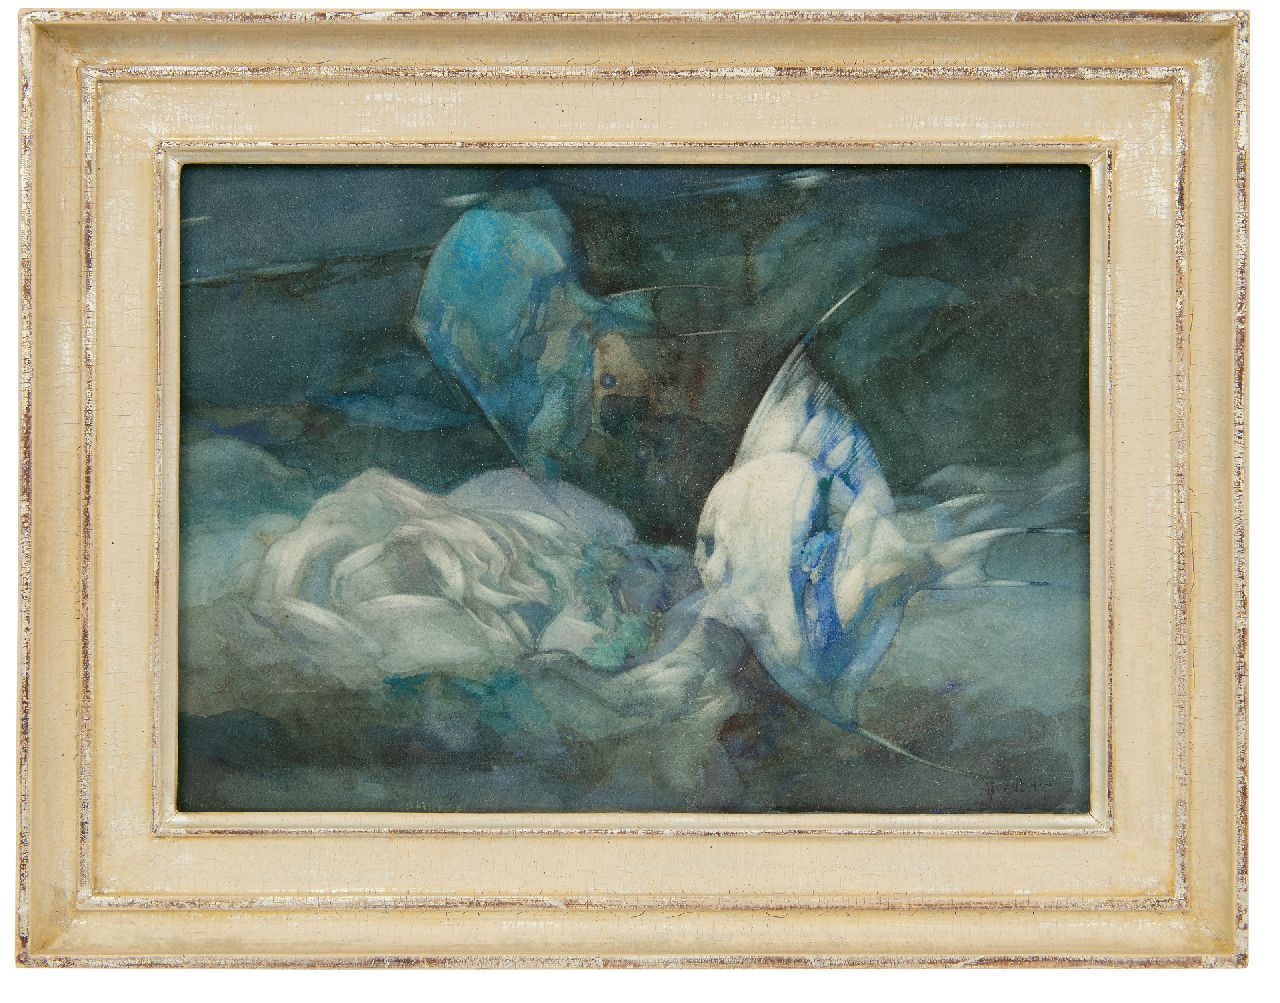 Hoff A.J. van 't | Adrianus Johannes 'Adriaan' van 't Hoff | Aquarellen en tekeningen te koop aangeboden | Maanvissen, aquarel op papier op board 24,9 x 34,4 cm, gesigneerd rechtsonder